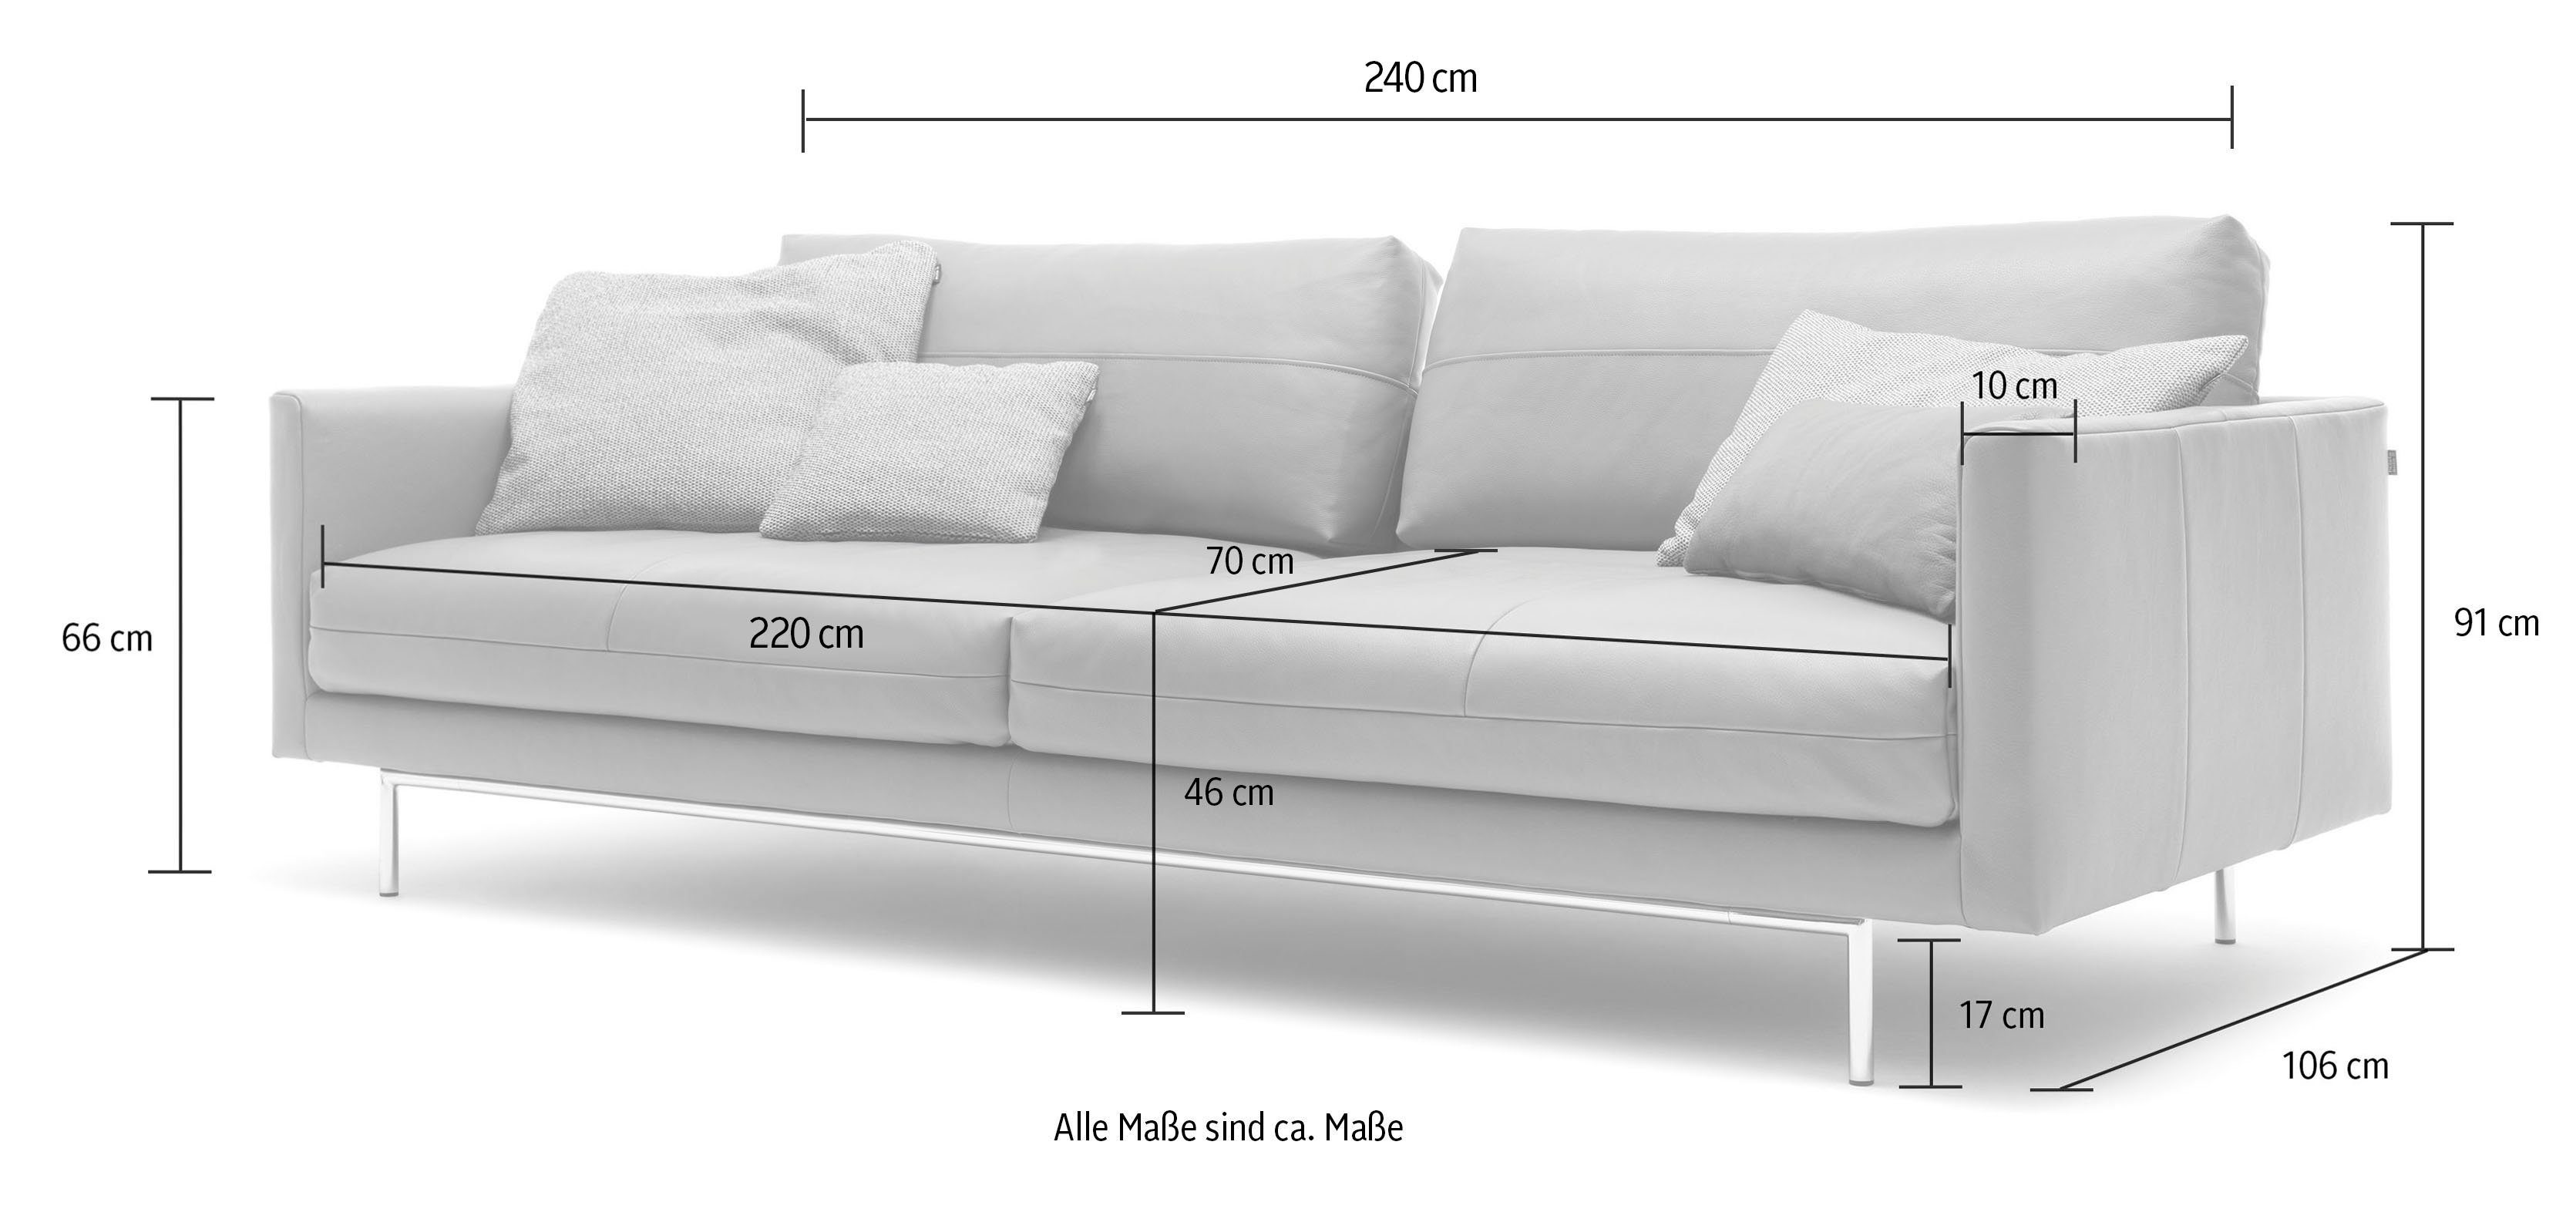 4-Sitzer seidengrau seidengrau sofa | hülsta